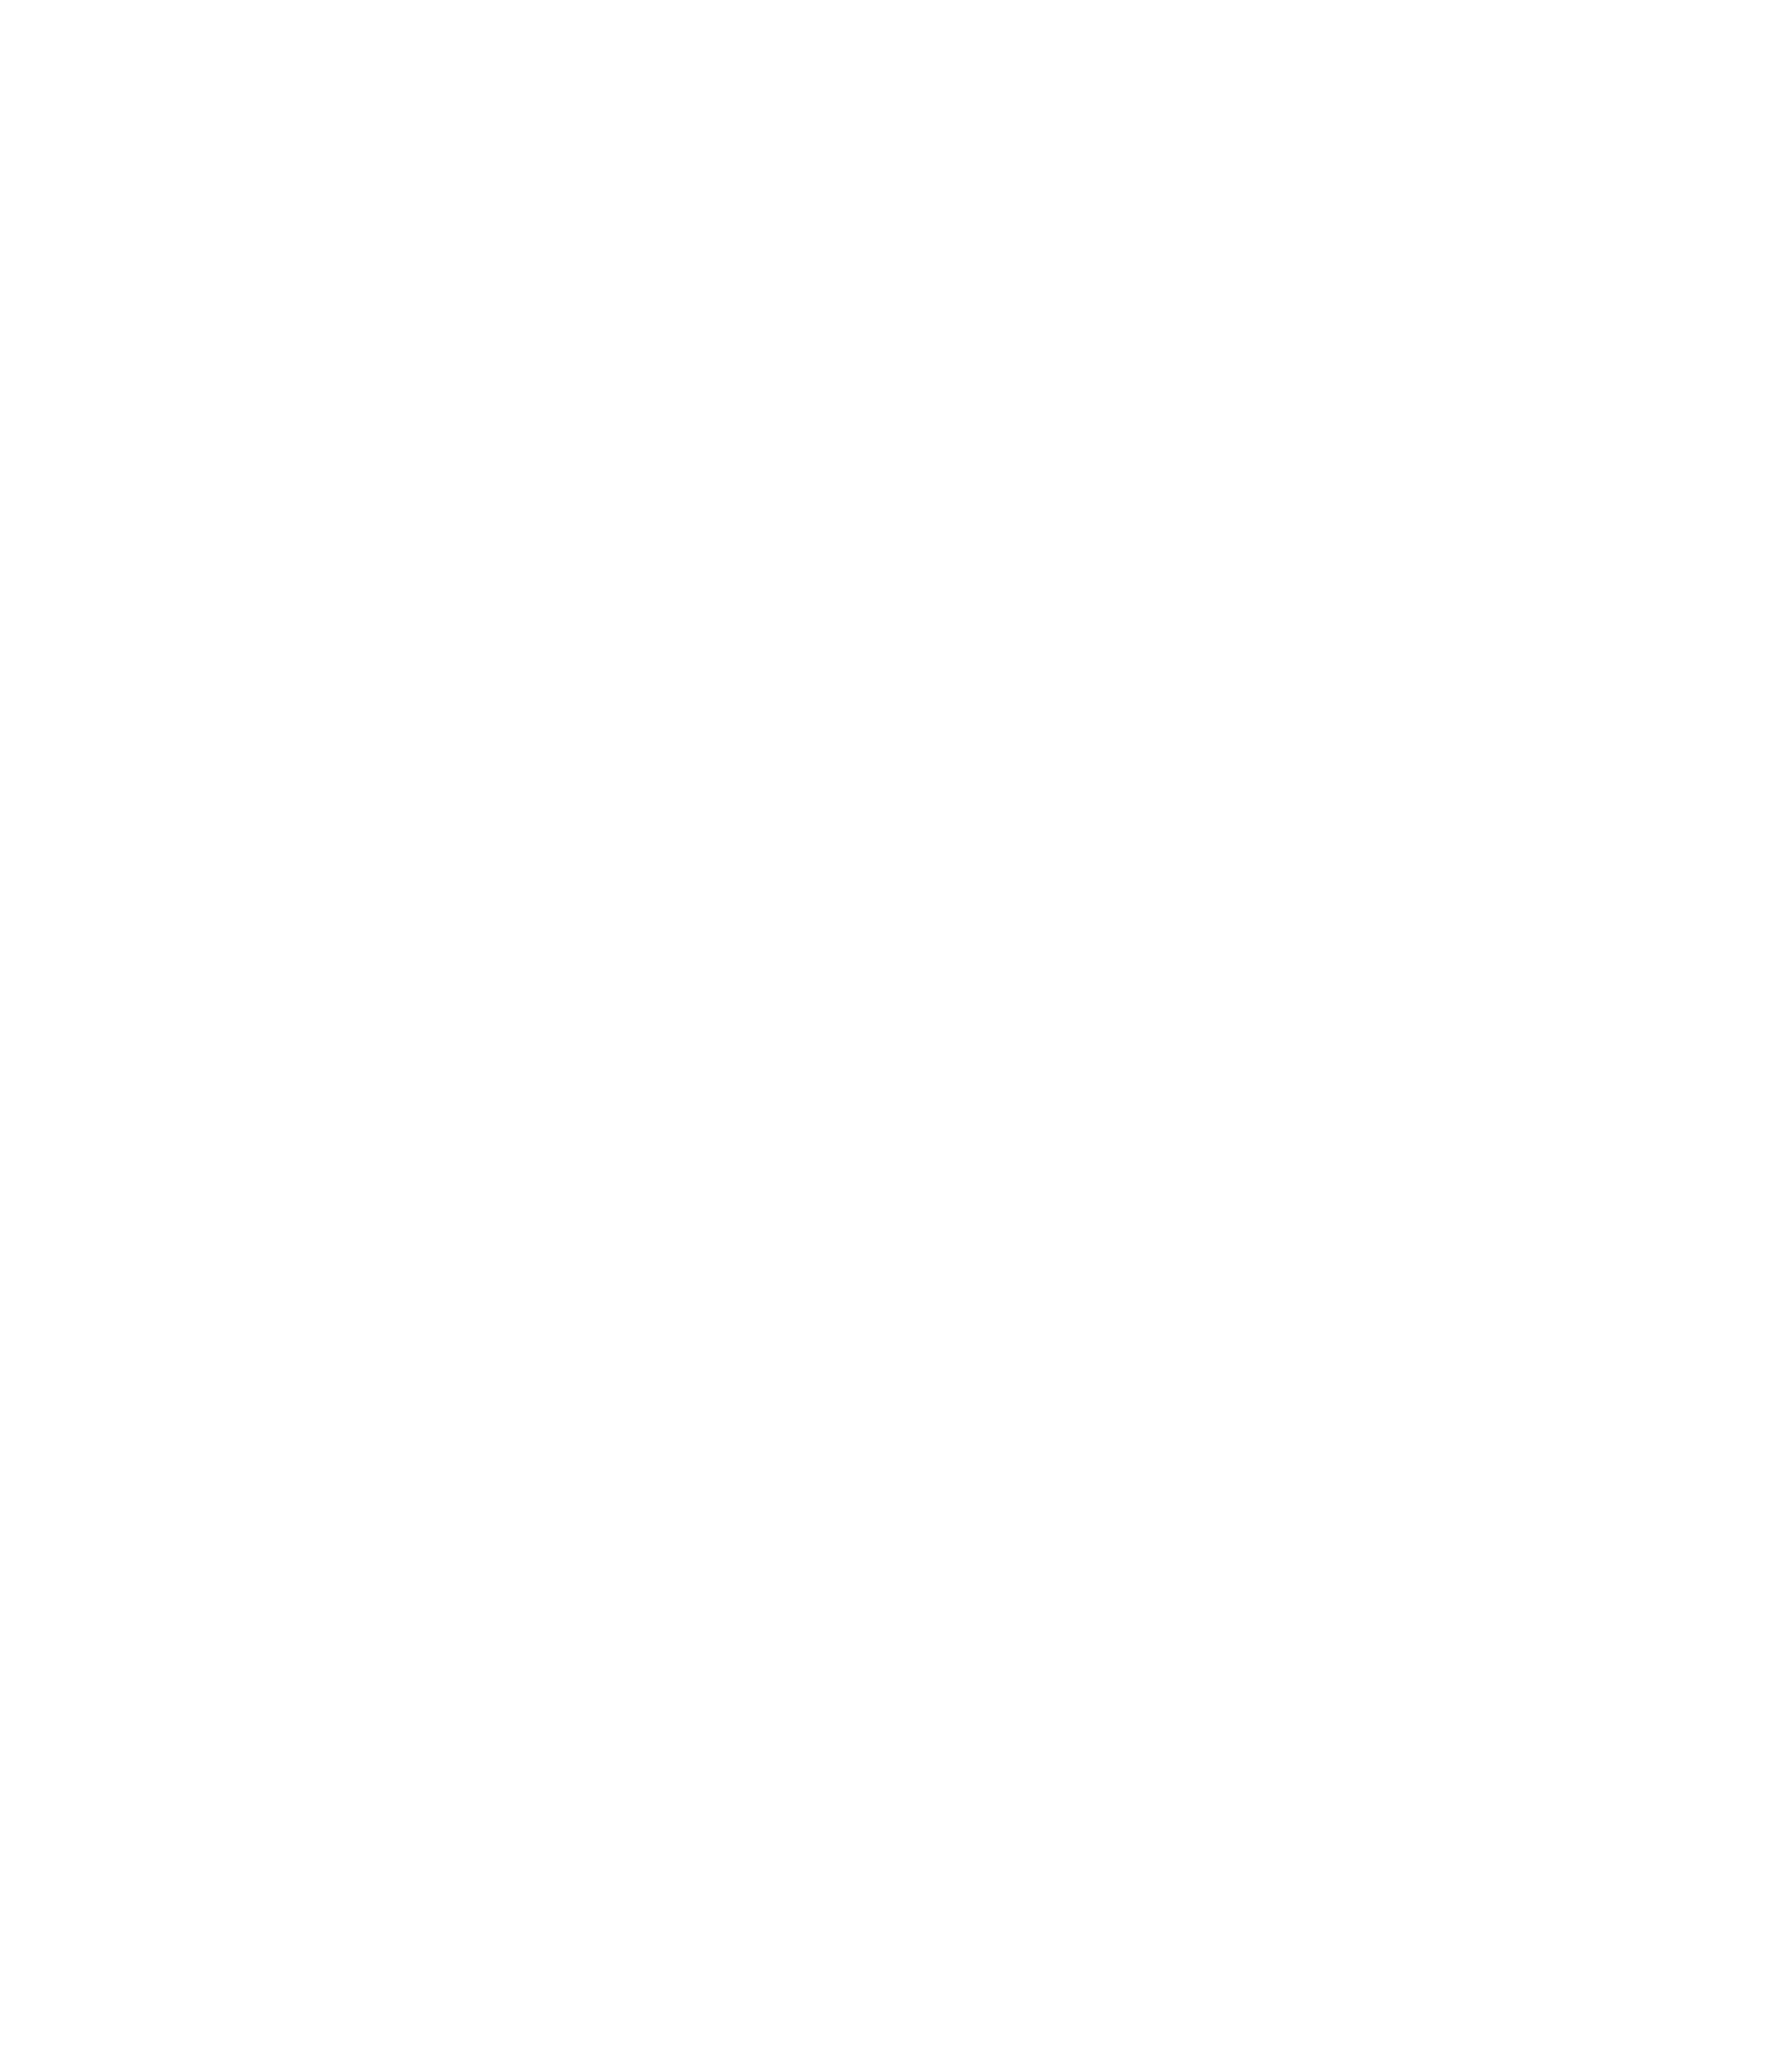  Dublin Tours